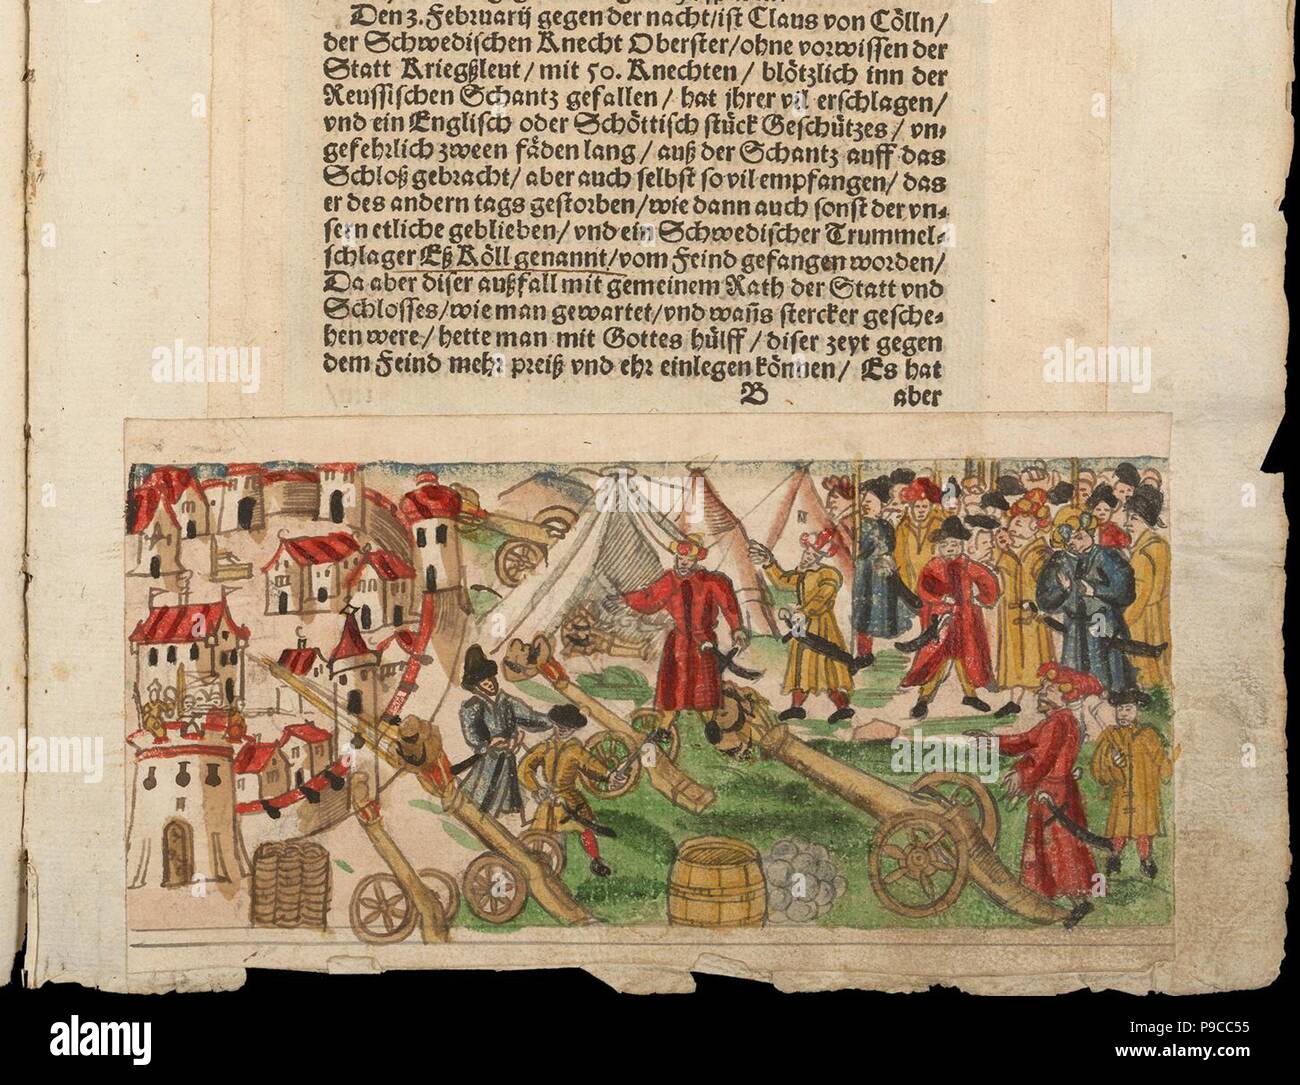 Siege of Reval by the Russians in 1578. From Johann Jakob Wick's Sammlung von Nachrichten... Museum: Zentralbibliothek Zürich. Stock Photo